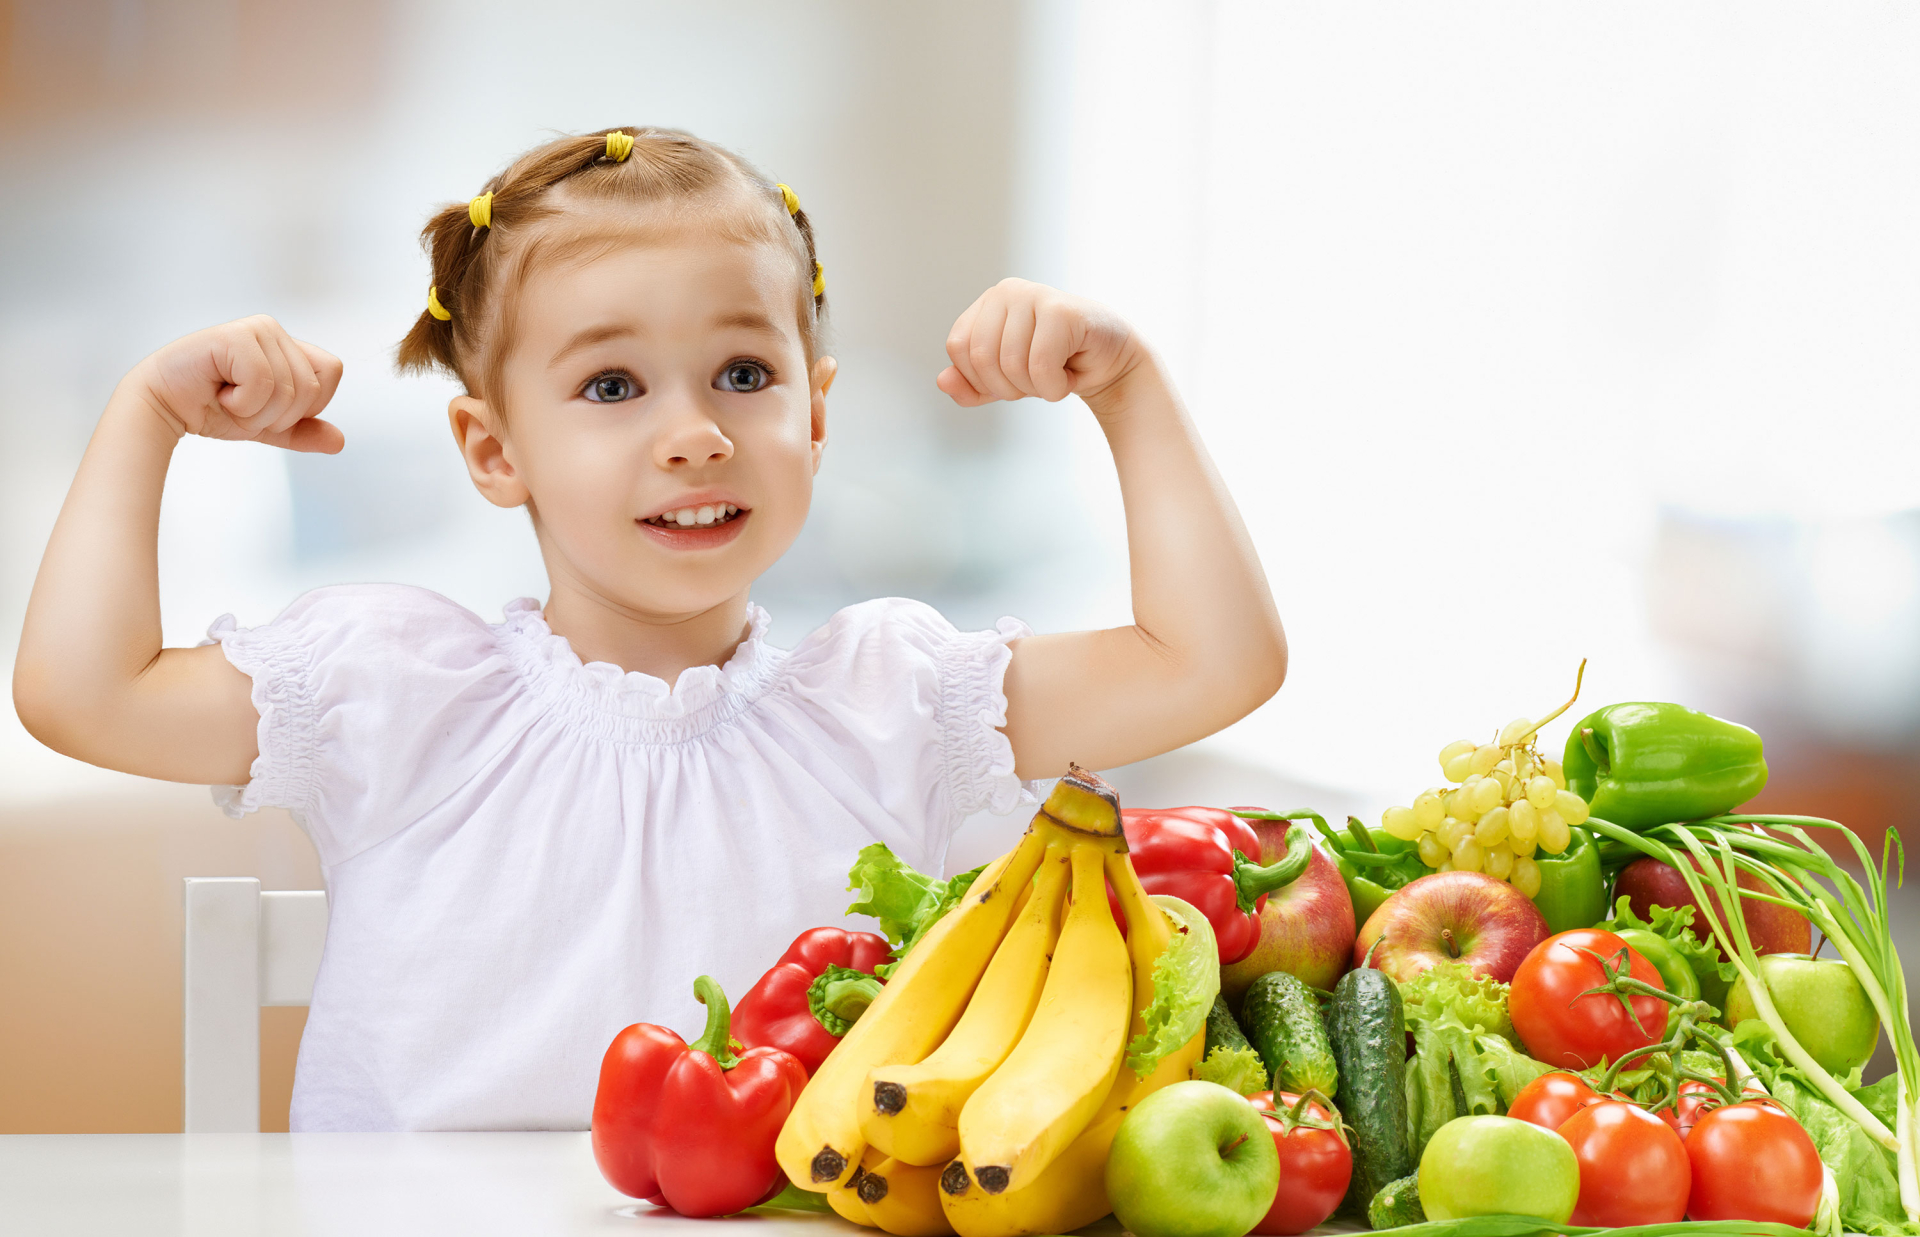 Với nguồn dinh dưỡng hợp lý, trẻ sẽ phát triển khỏe mạnh cả thể chất và não bộ.